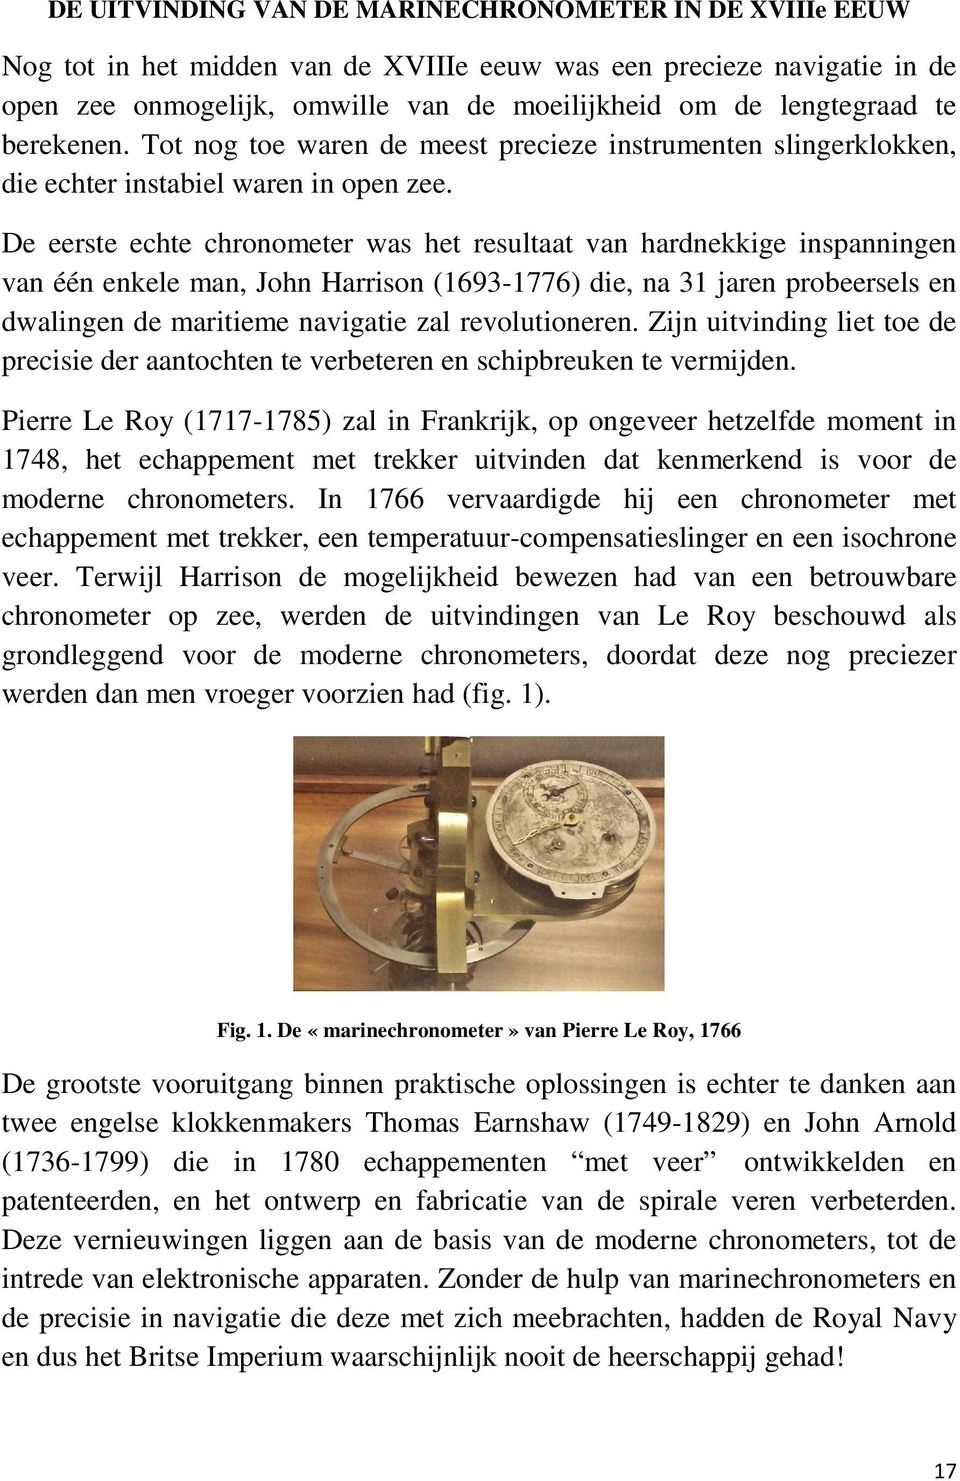 De eerste echte chronometer was het resultaat van hardnekkige inspanningen van één enkele man, John Harrison (1693-1776) die, na 31 jaren probeersels en dwalingen de maritieme navigatie zal